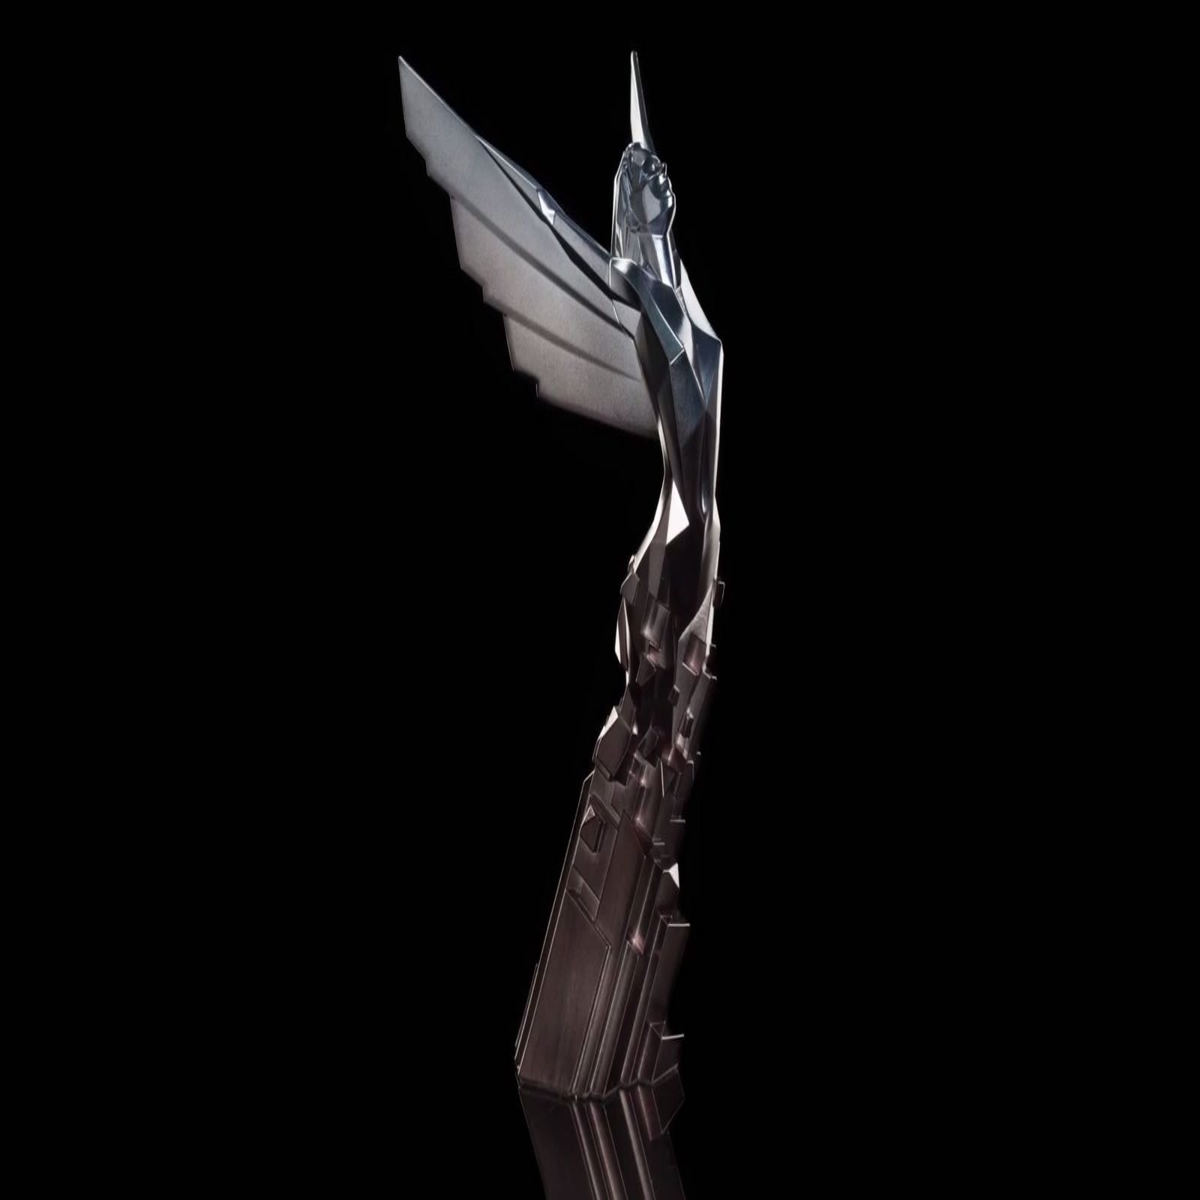 The Game Awards 2016 tem Overwatch como jogo do ano e até brasileiro na  lista 